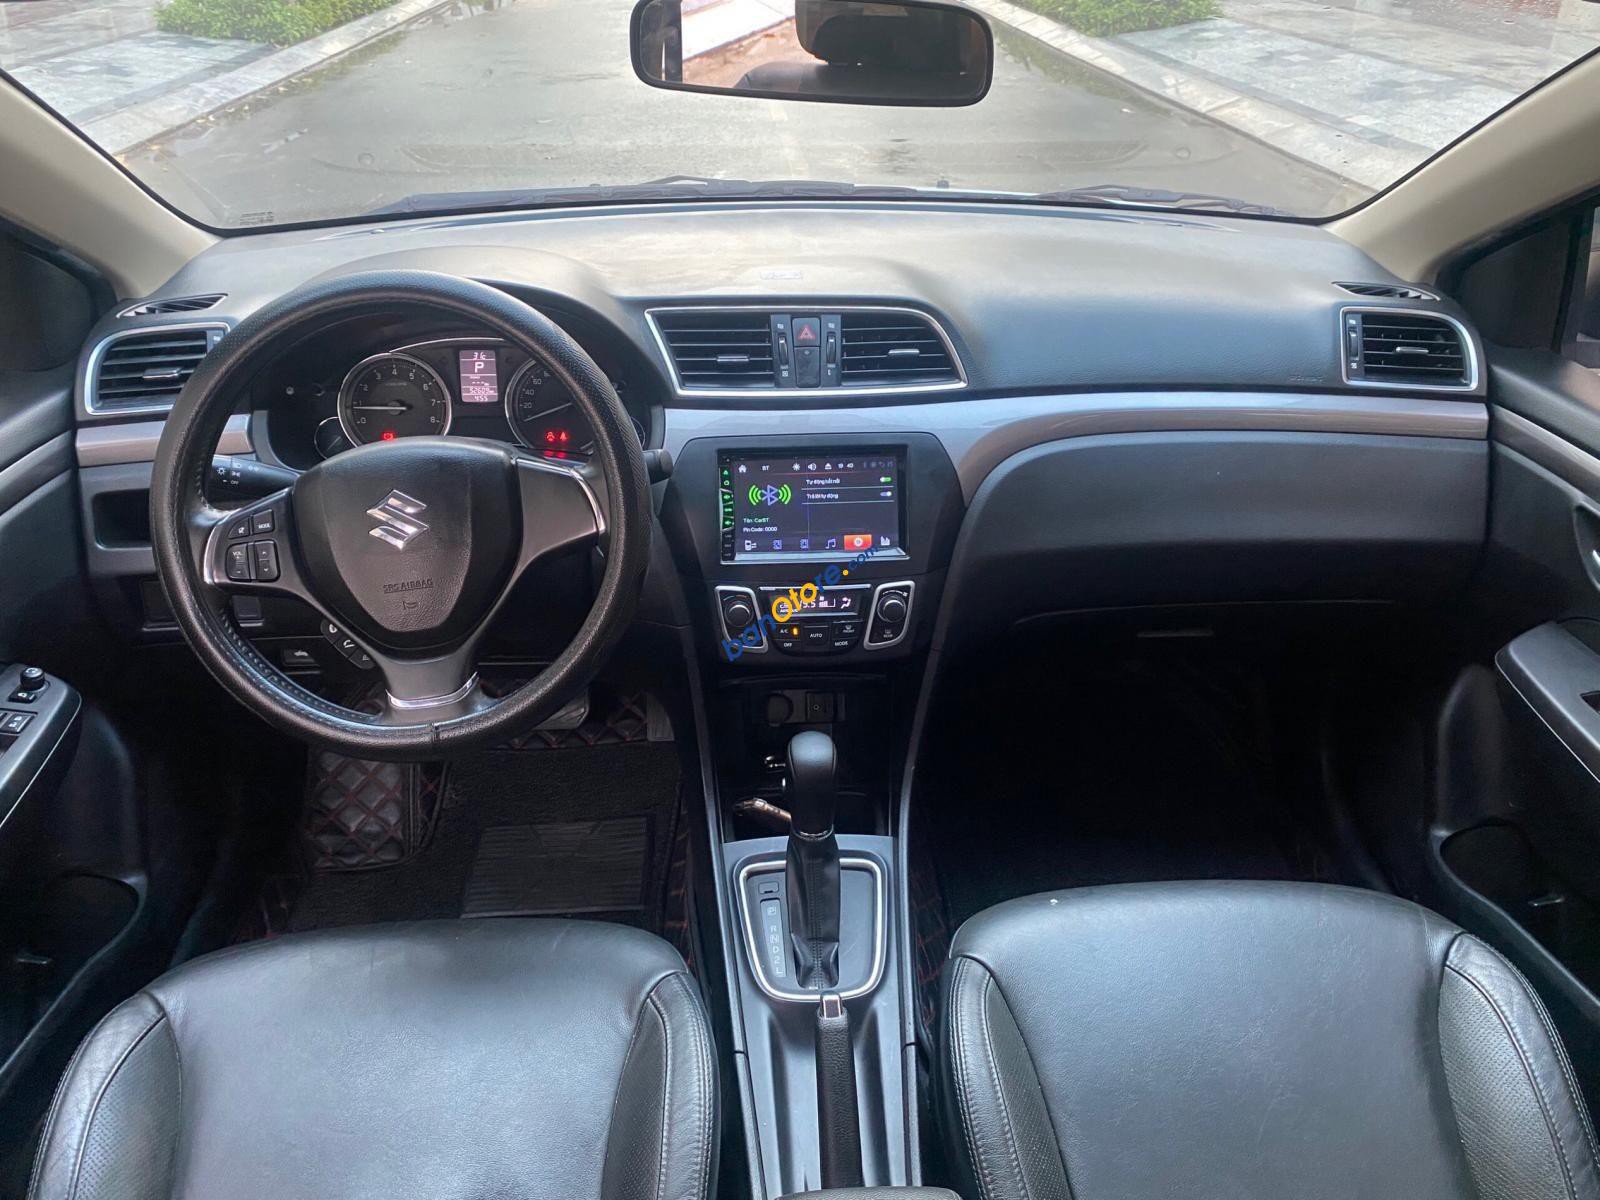 Suzuki 2019 - Xe nhập Thái số tự động, lành tính, cực kỳ tiết kiệm (tầm 5-6l/100km)